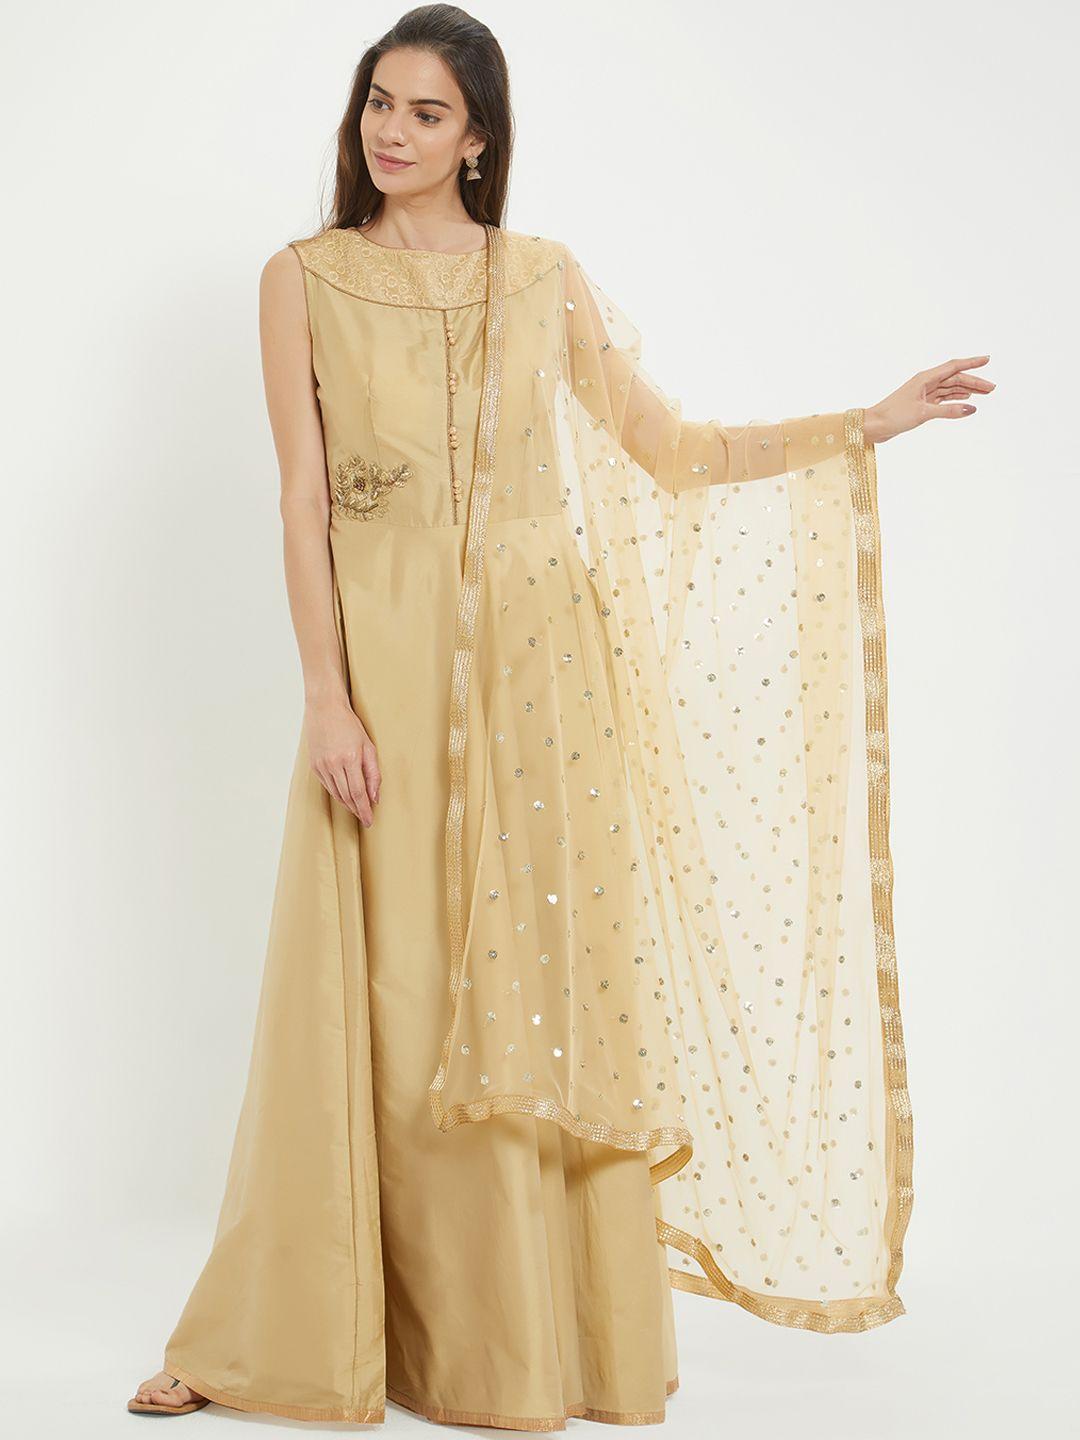 dupatta-bazaar-beige-&-golden-colored-embroidered-dupatta